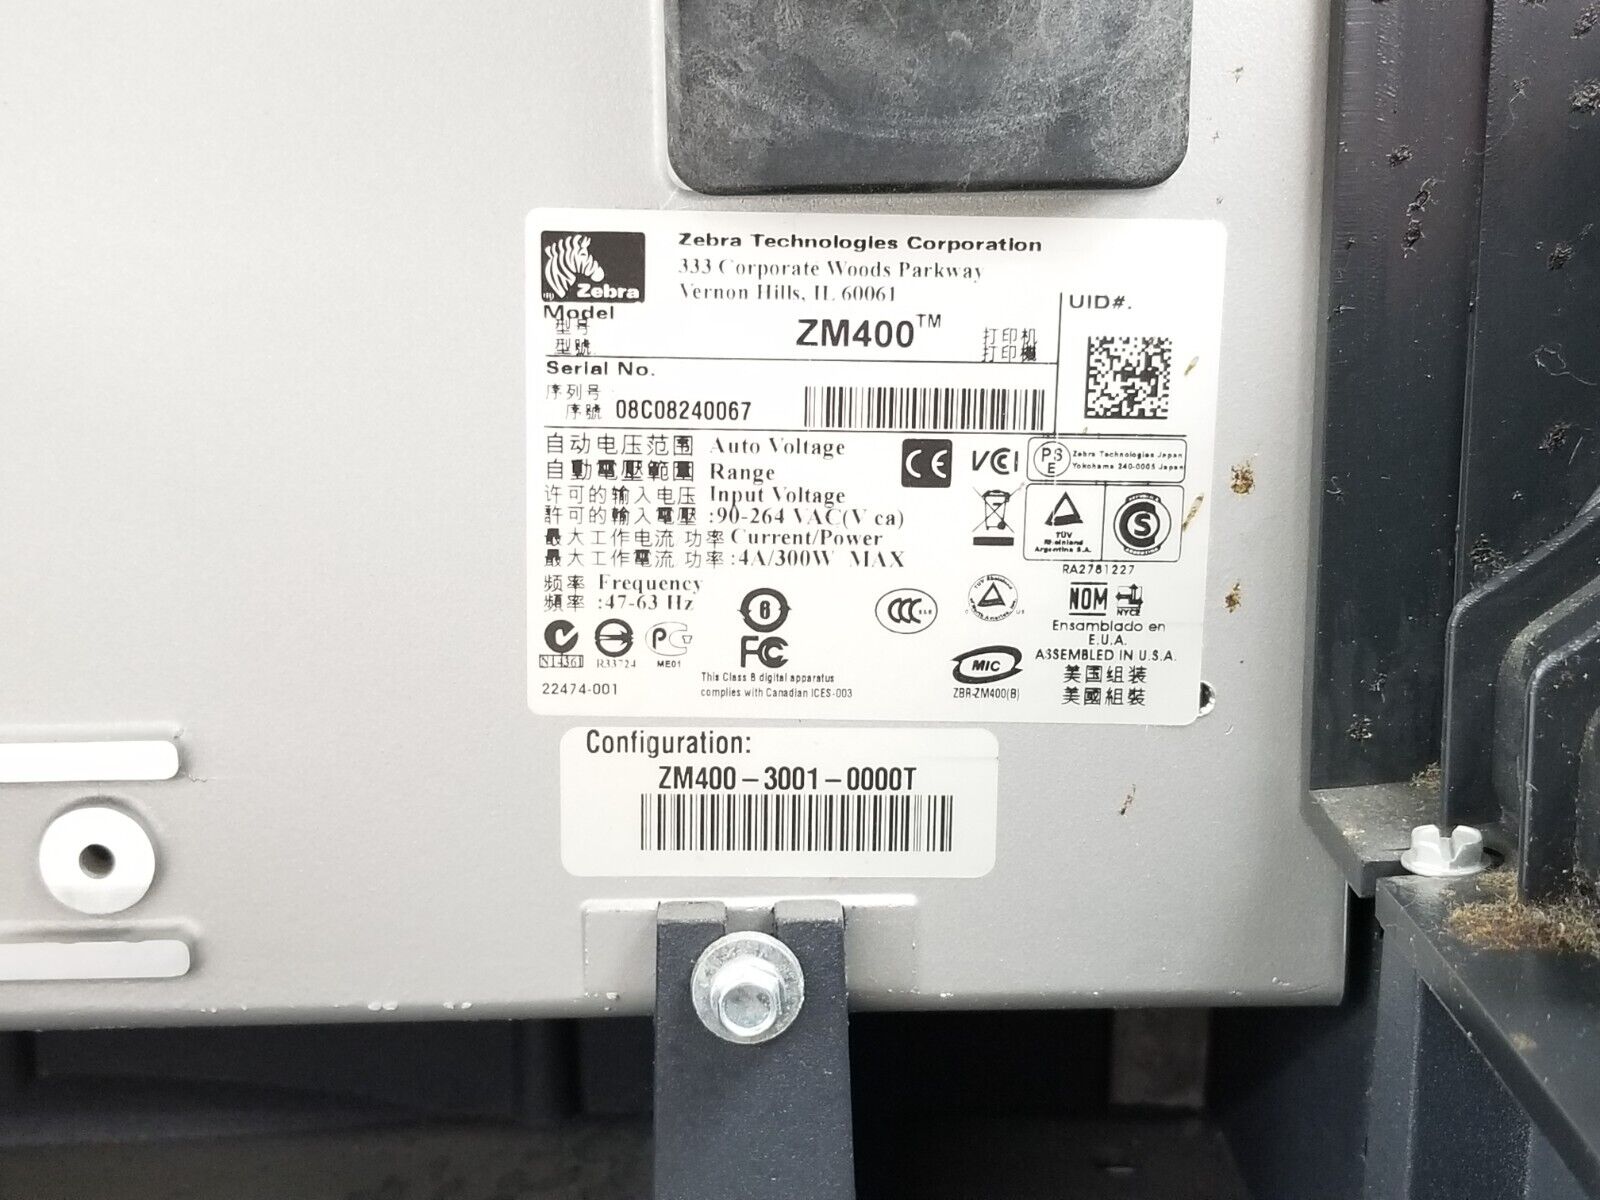 Zebra ZM400 Thermal Label Printer USB Serial Parallel Network